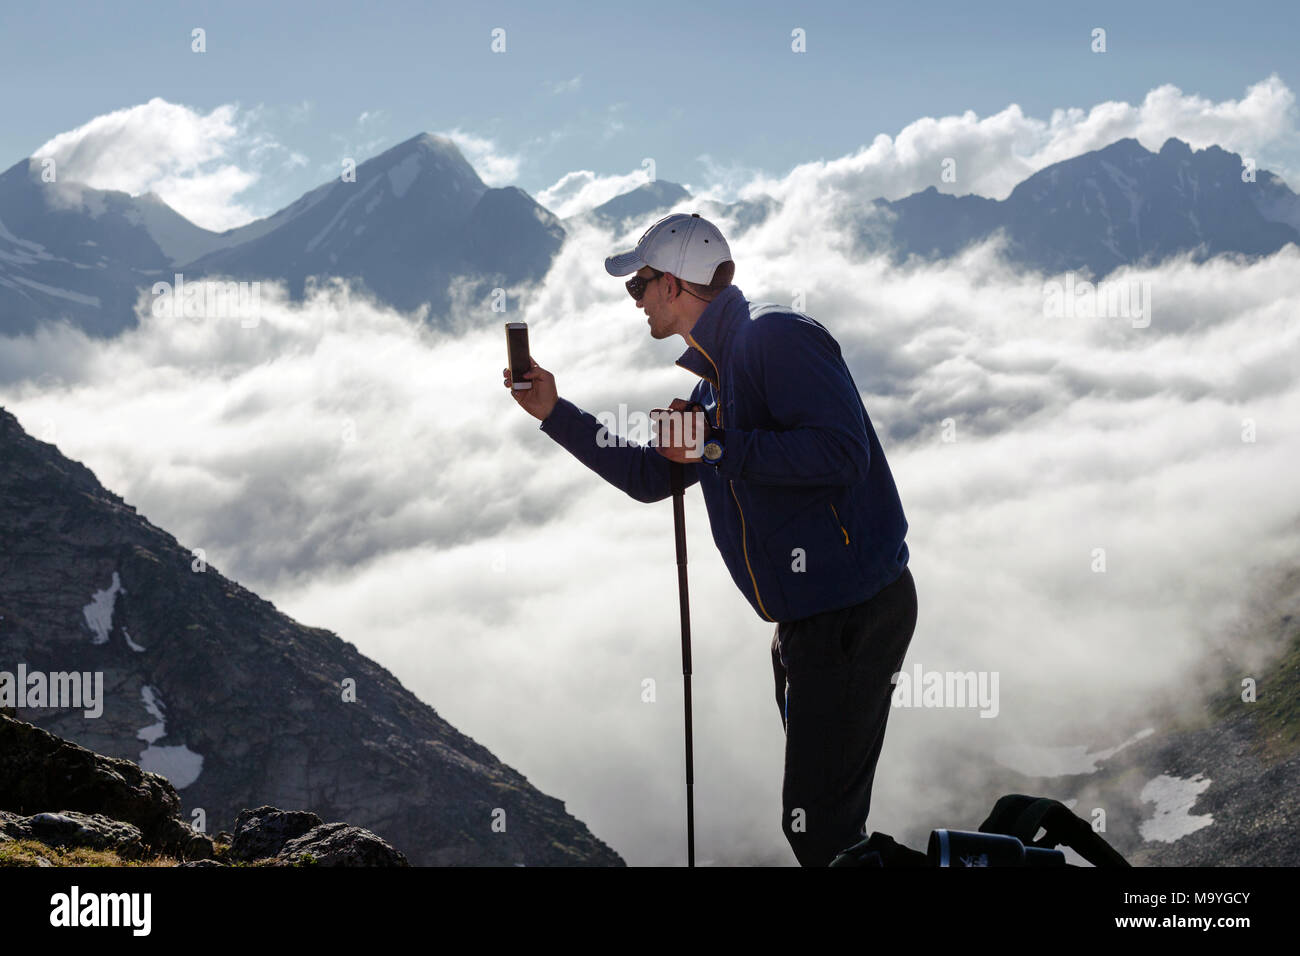 Hipster homme tire une vidéo d'un paysage de montagne avec des nuages sur un téléphone mobile, alors que l'article de fond contre les hauts sommets. L'homme est tak Banque D'Images